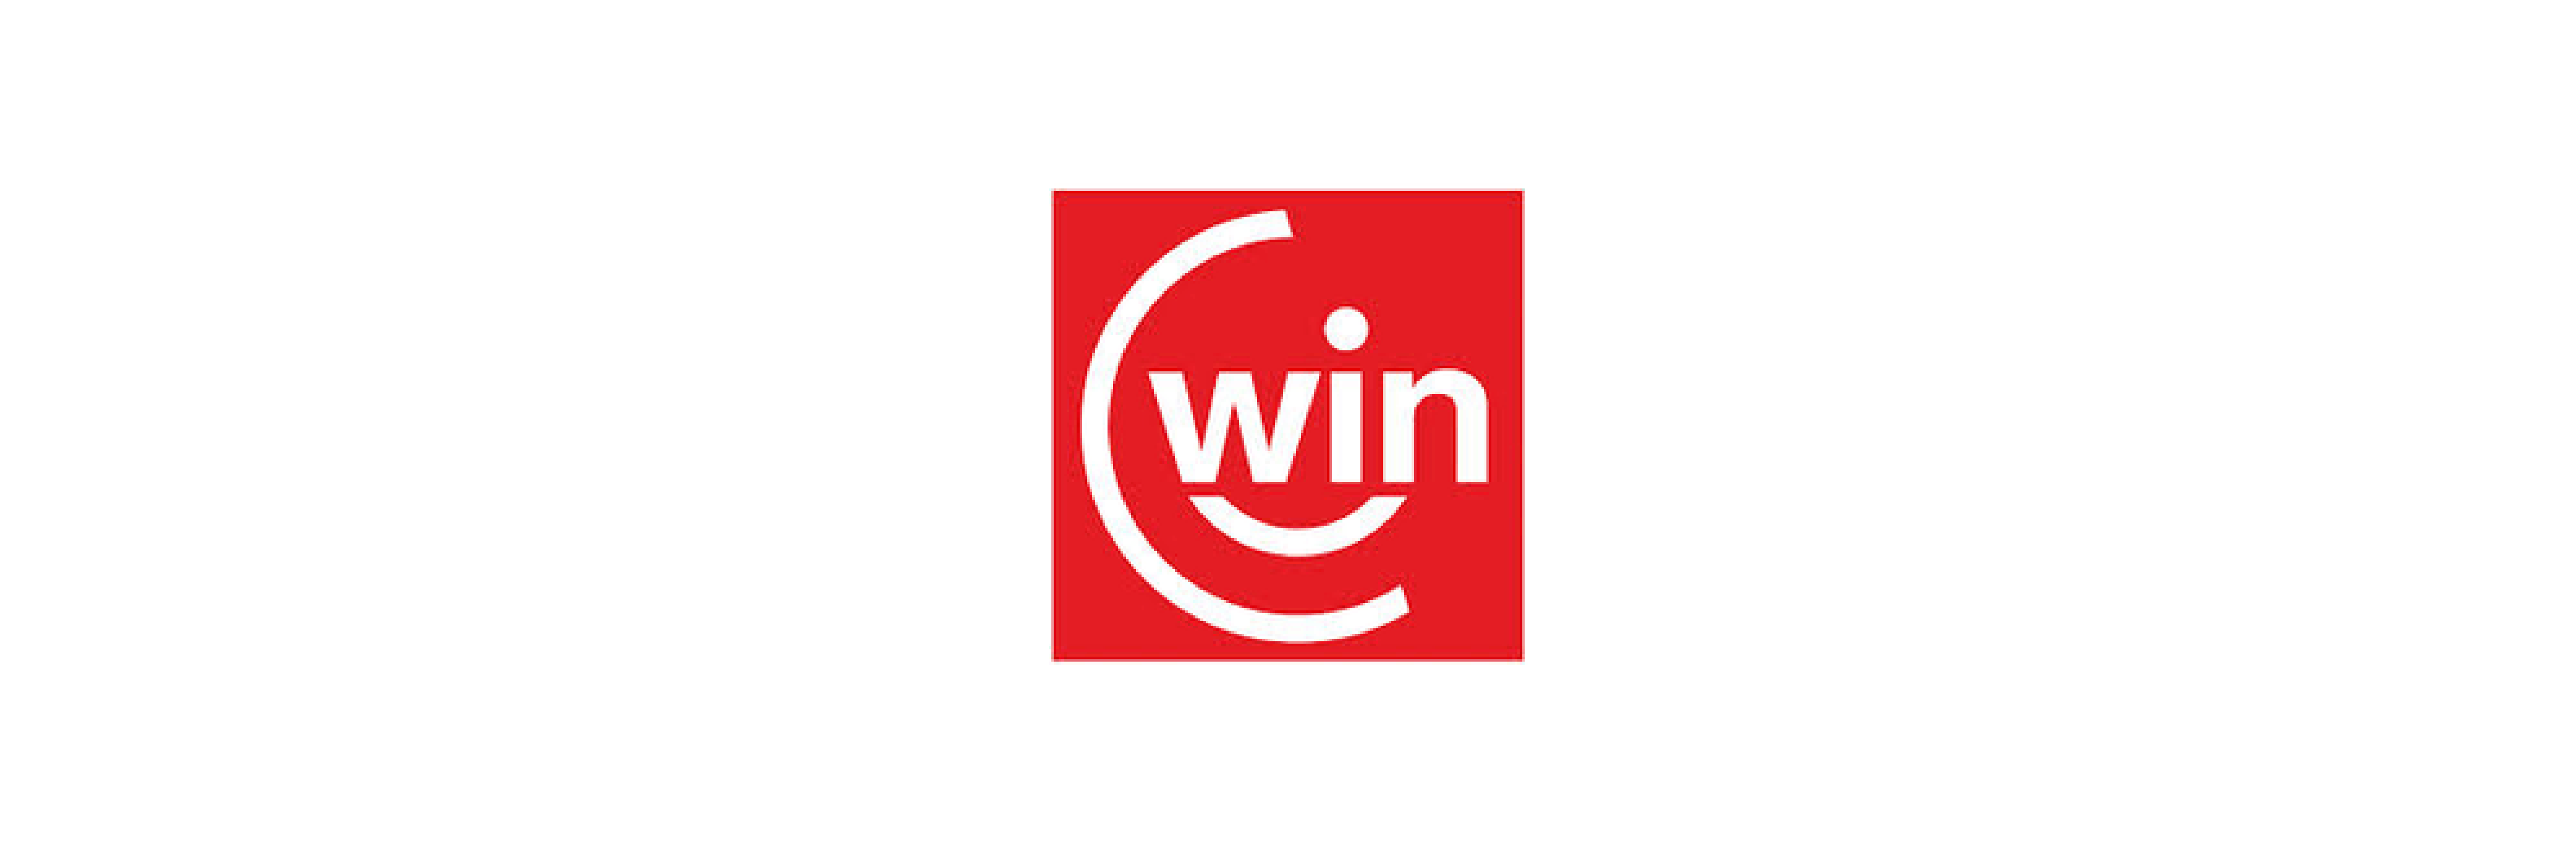 partner-logos_Win-1